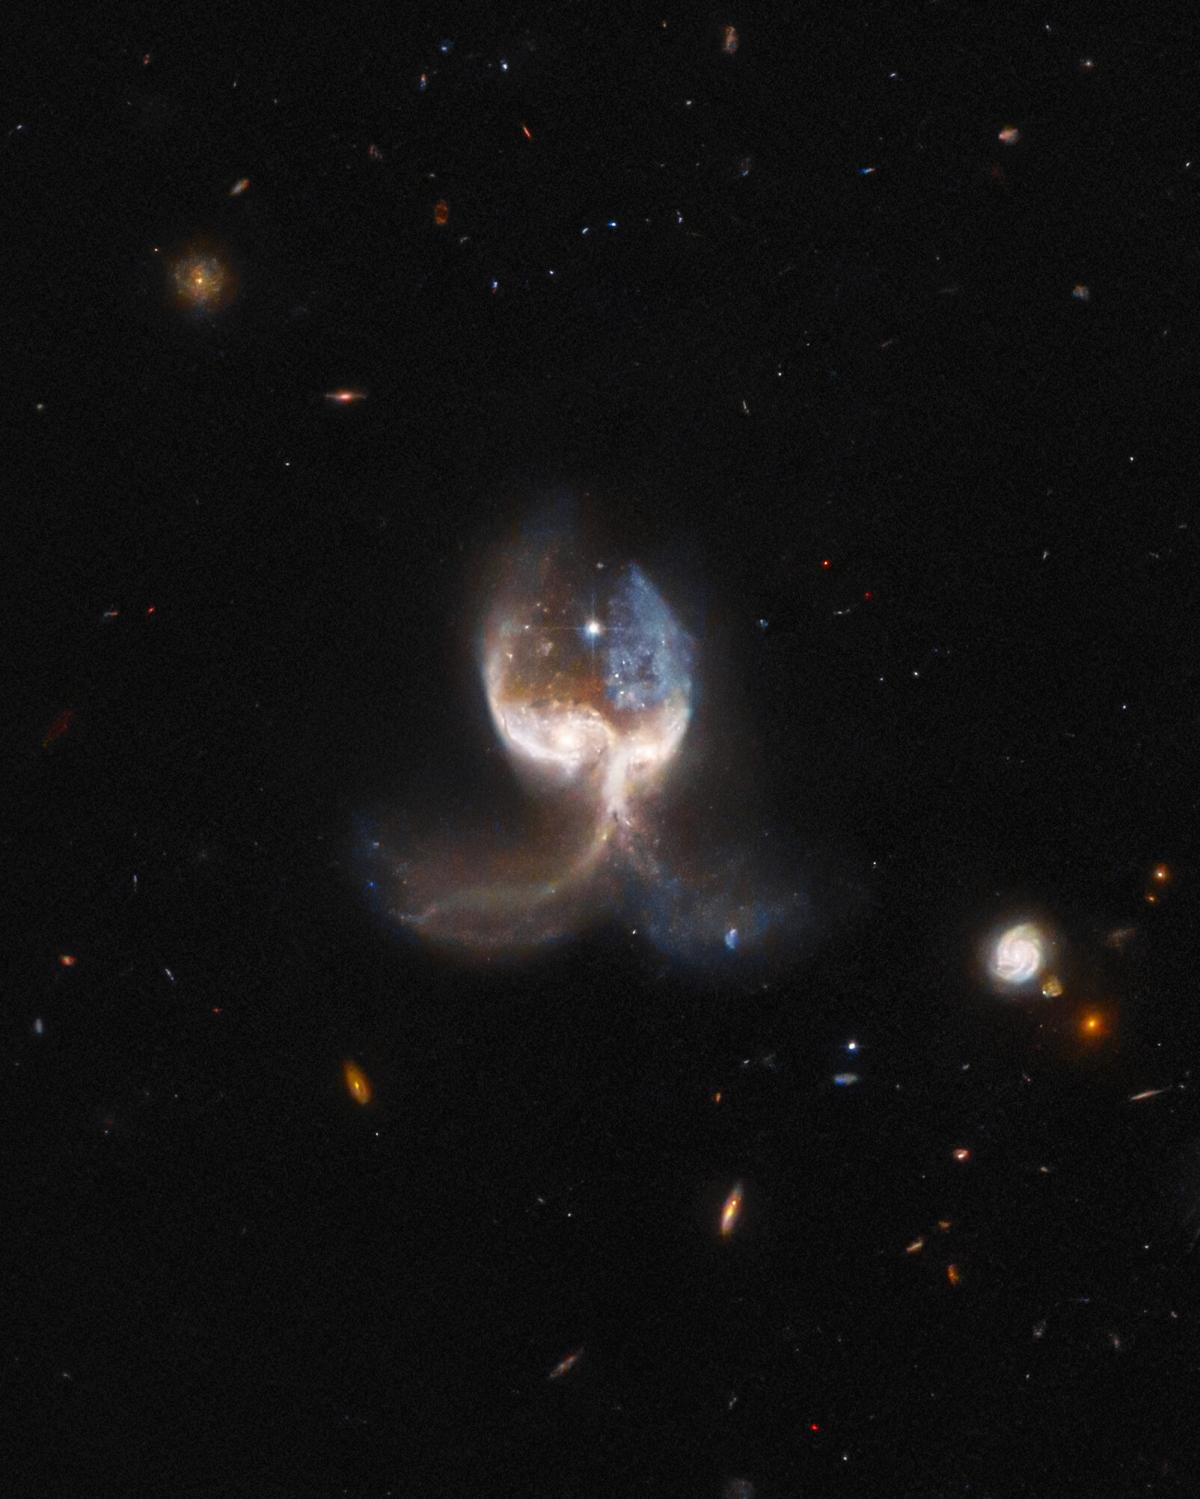 Галактики находятся в самом разгаре столкновения / фото ESA/Hubble & NASA, W. Keel; J. Schmidt